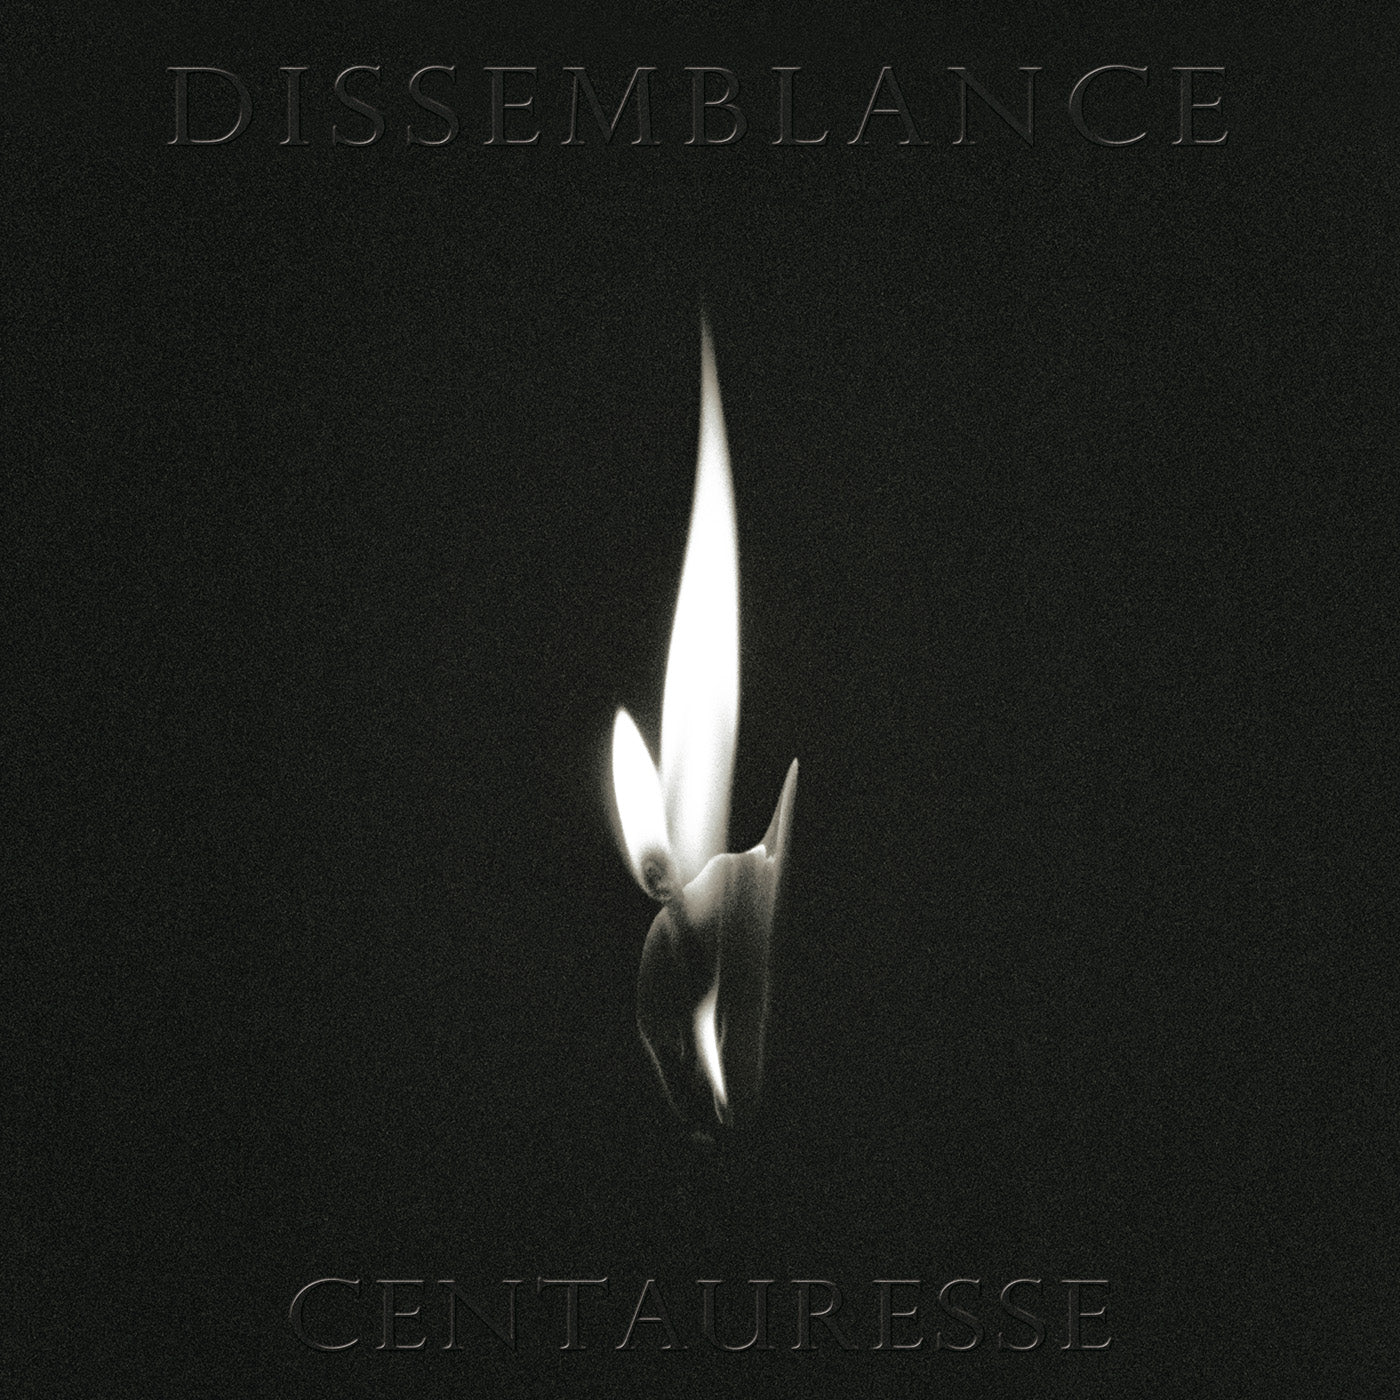 Dissemblance - Centauresse - LP - LIES-195